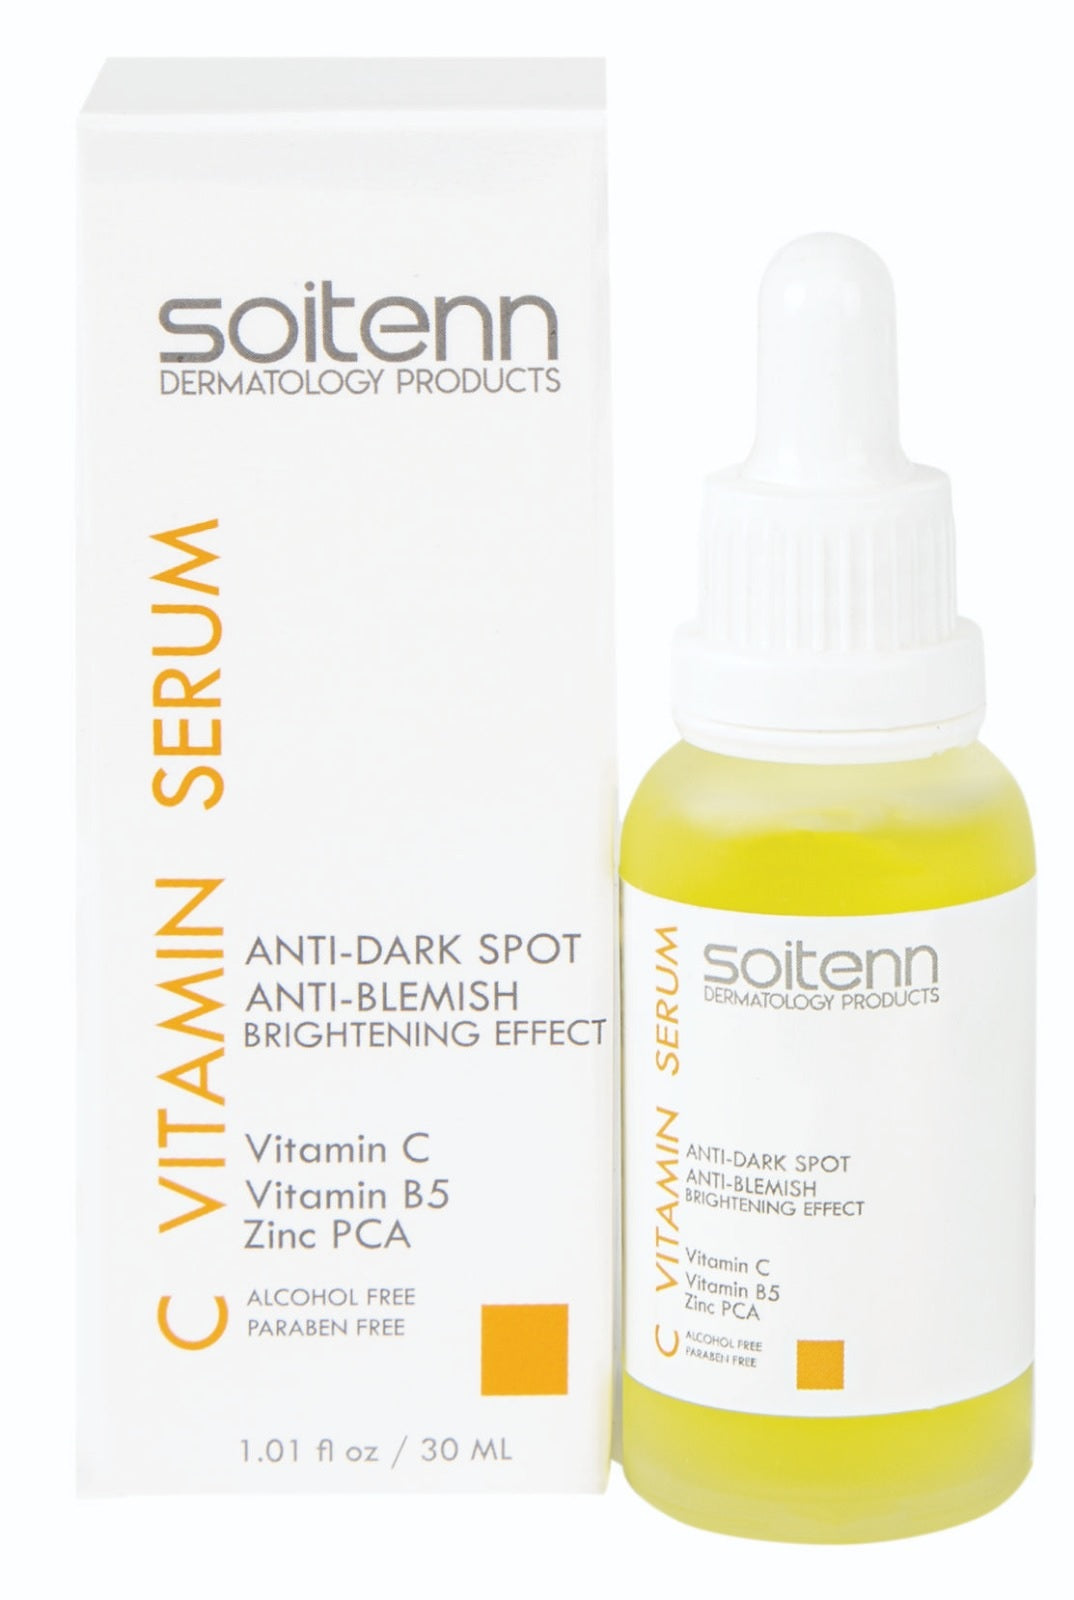 Soitenn Vitamin C (Leke Karşıtı) Serum 30 ml